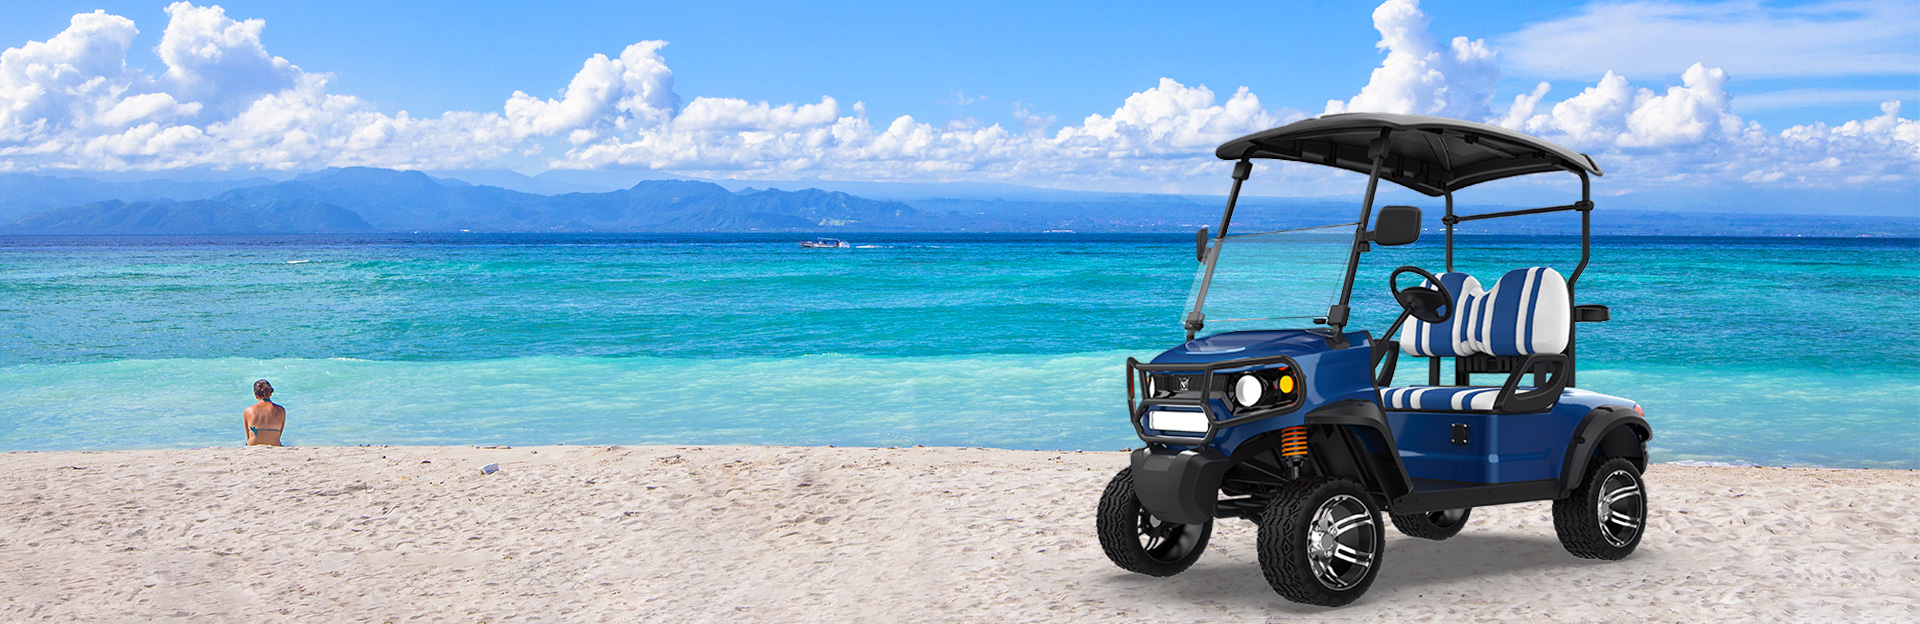 Seaside Serenity: navette elettriche legali stradali che migliorano la mobilità della comunità costiera